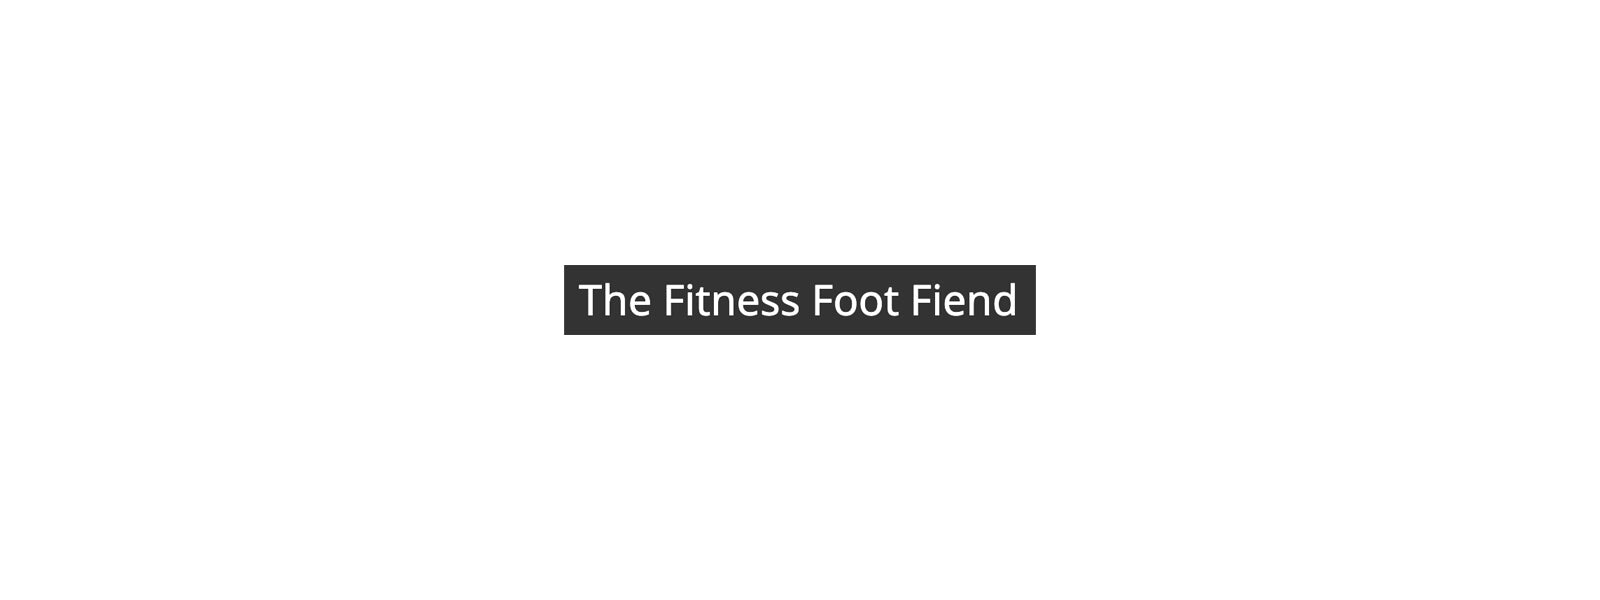 The Fitness Foot Fiend – Peninsula Hot Springs Wellness Calendar Launch